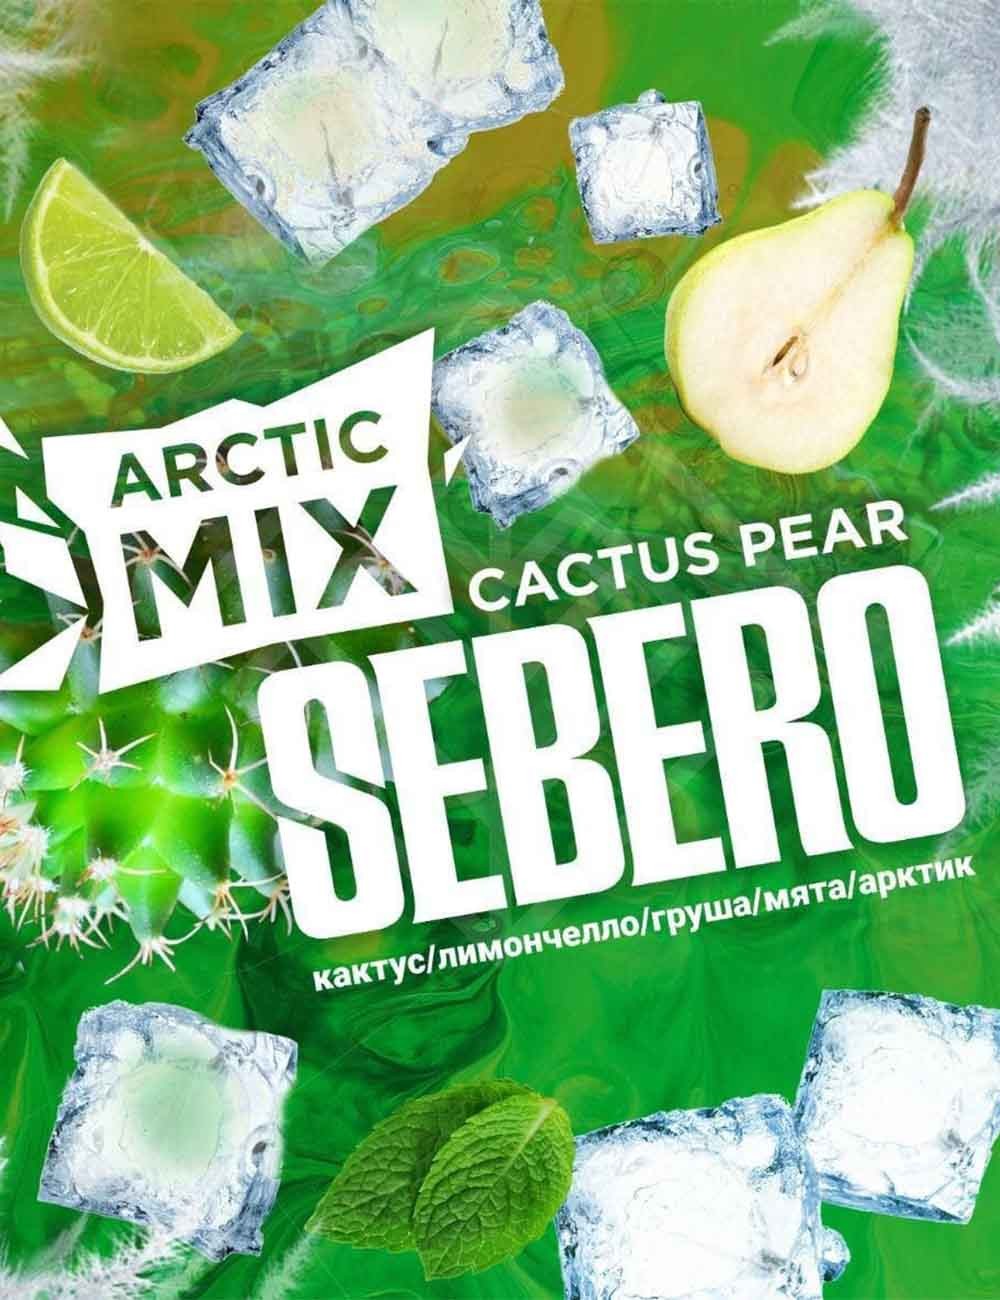 "Arctic Mix" Cactus Pear (Caktys Tear)